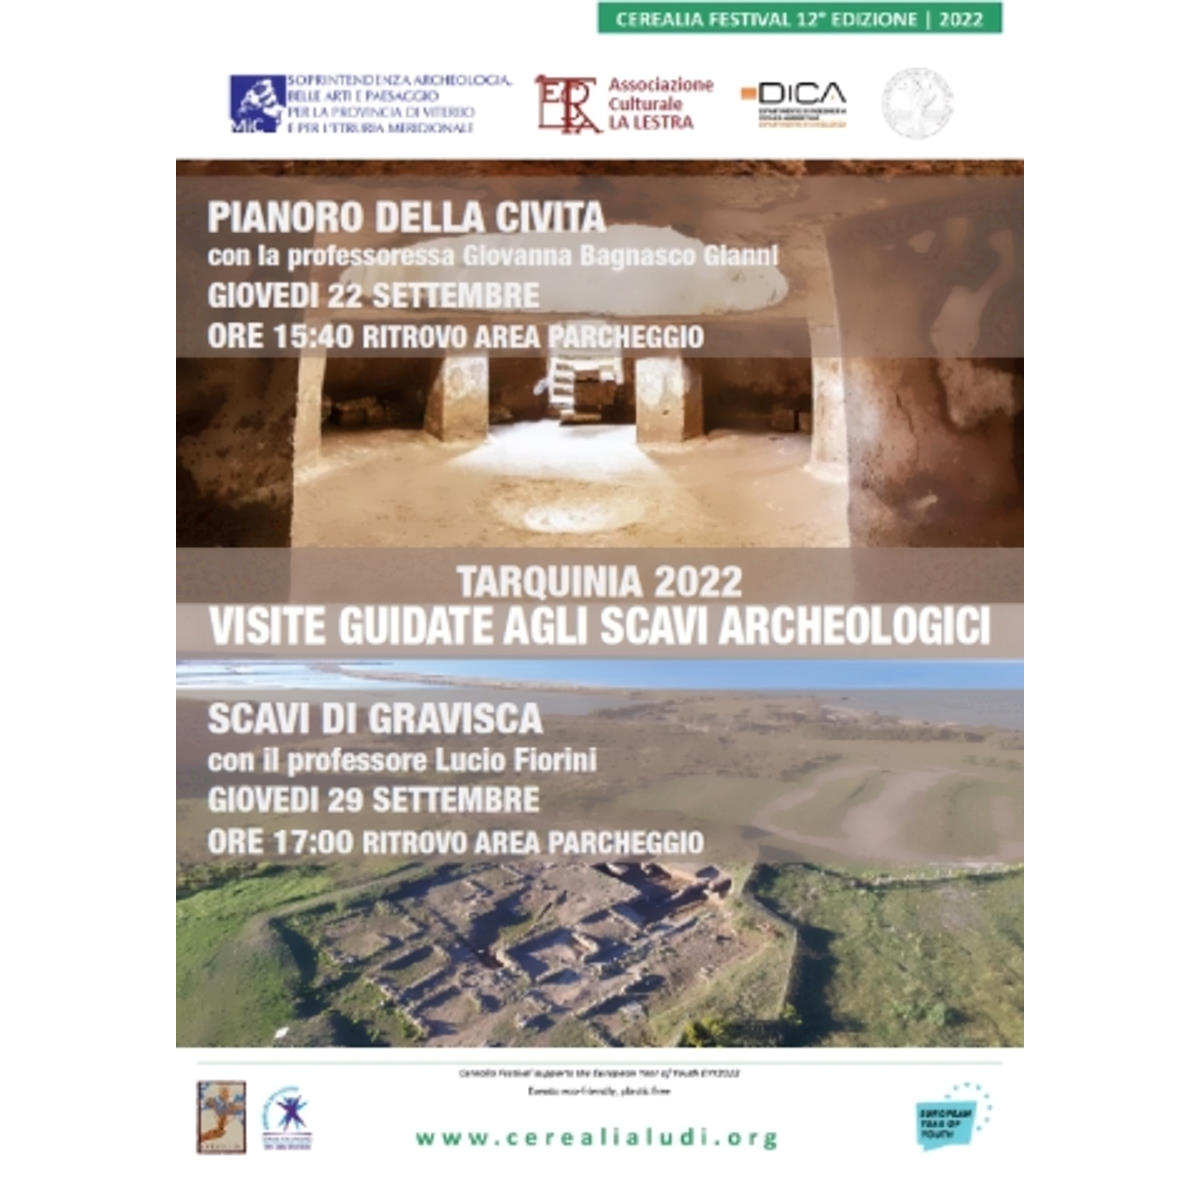 Tarquinia: gli scavi archeologici del Pianoro della Civita e di Gravisca al centro delle attenzioni della 12ª Edizione di Cerealia